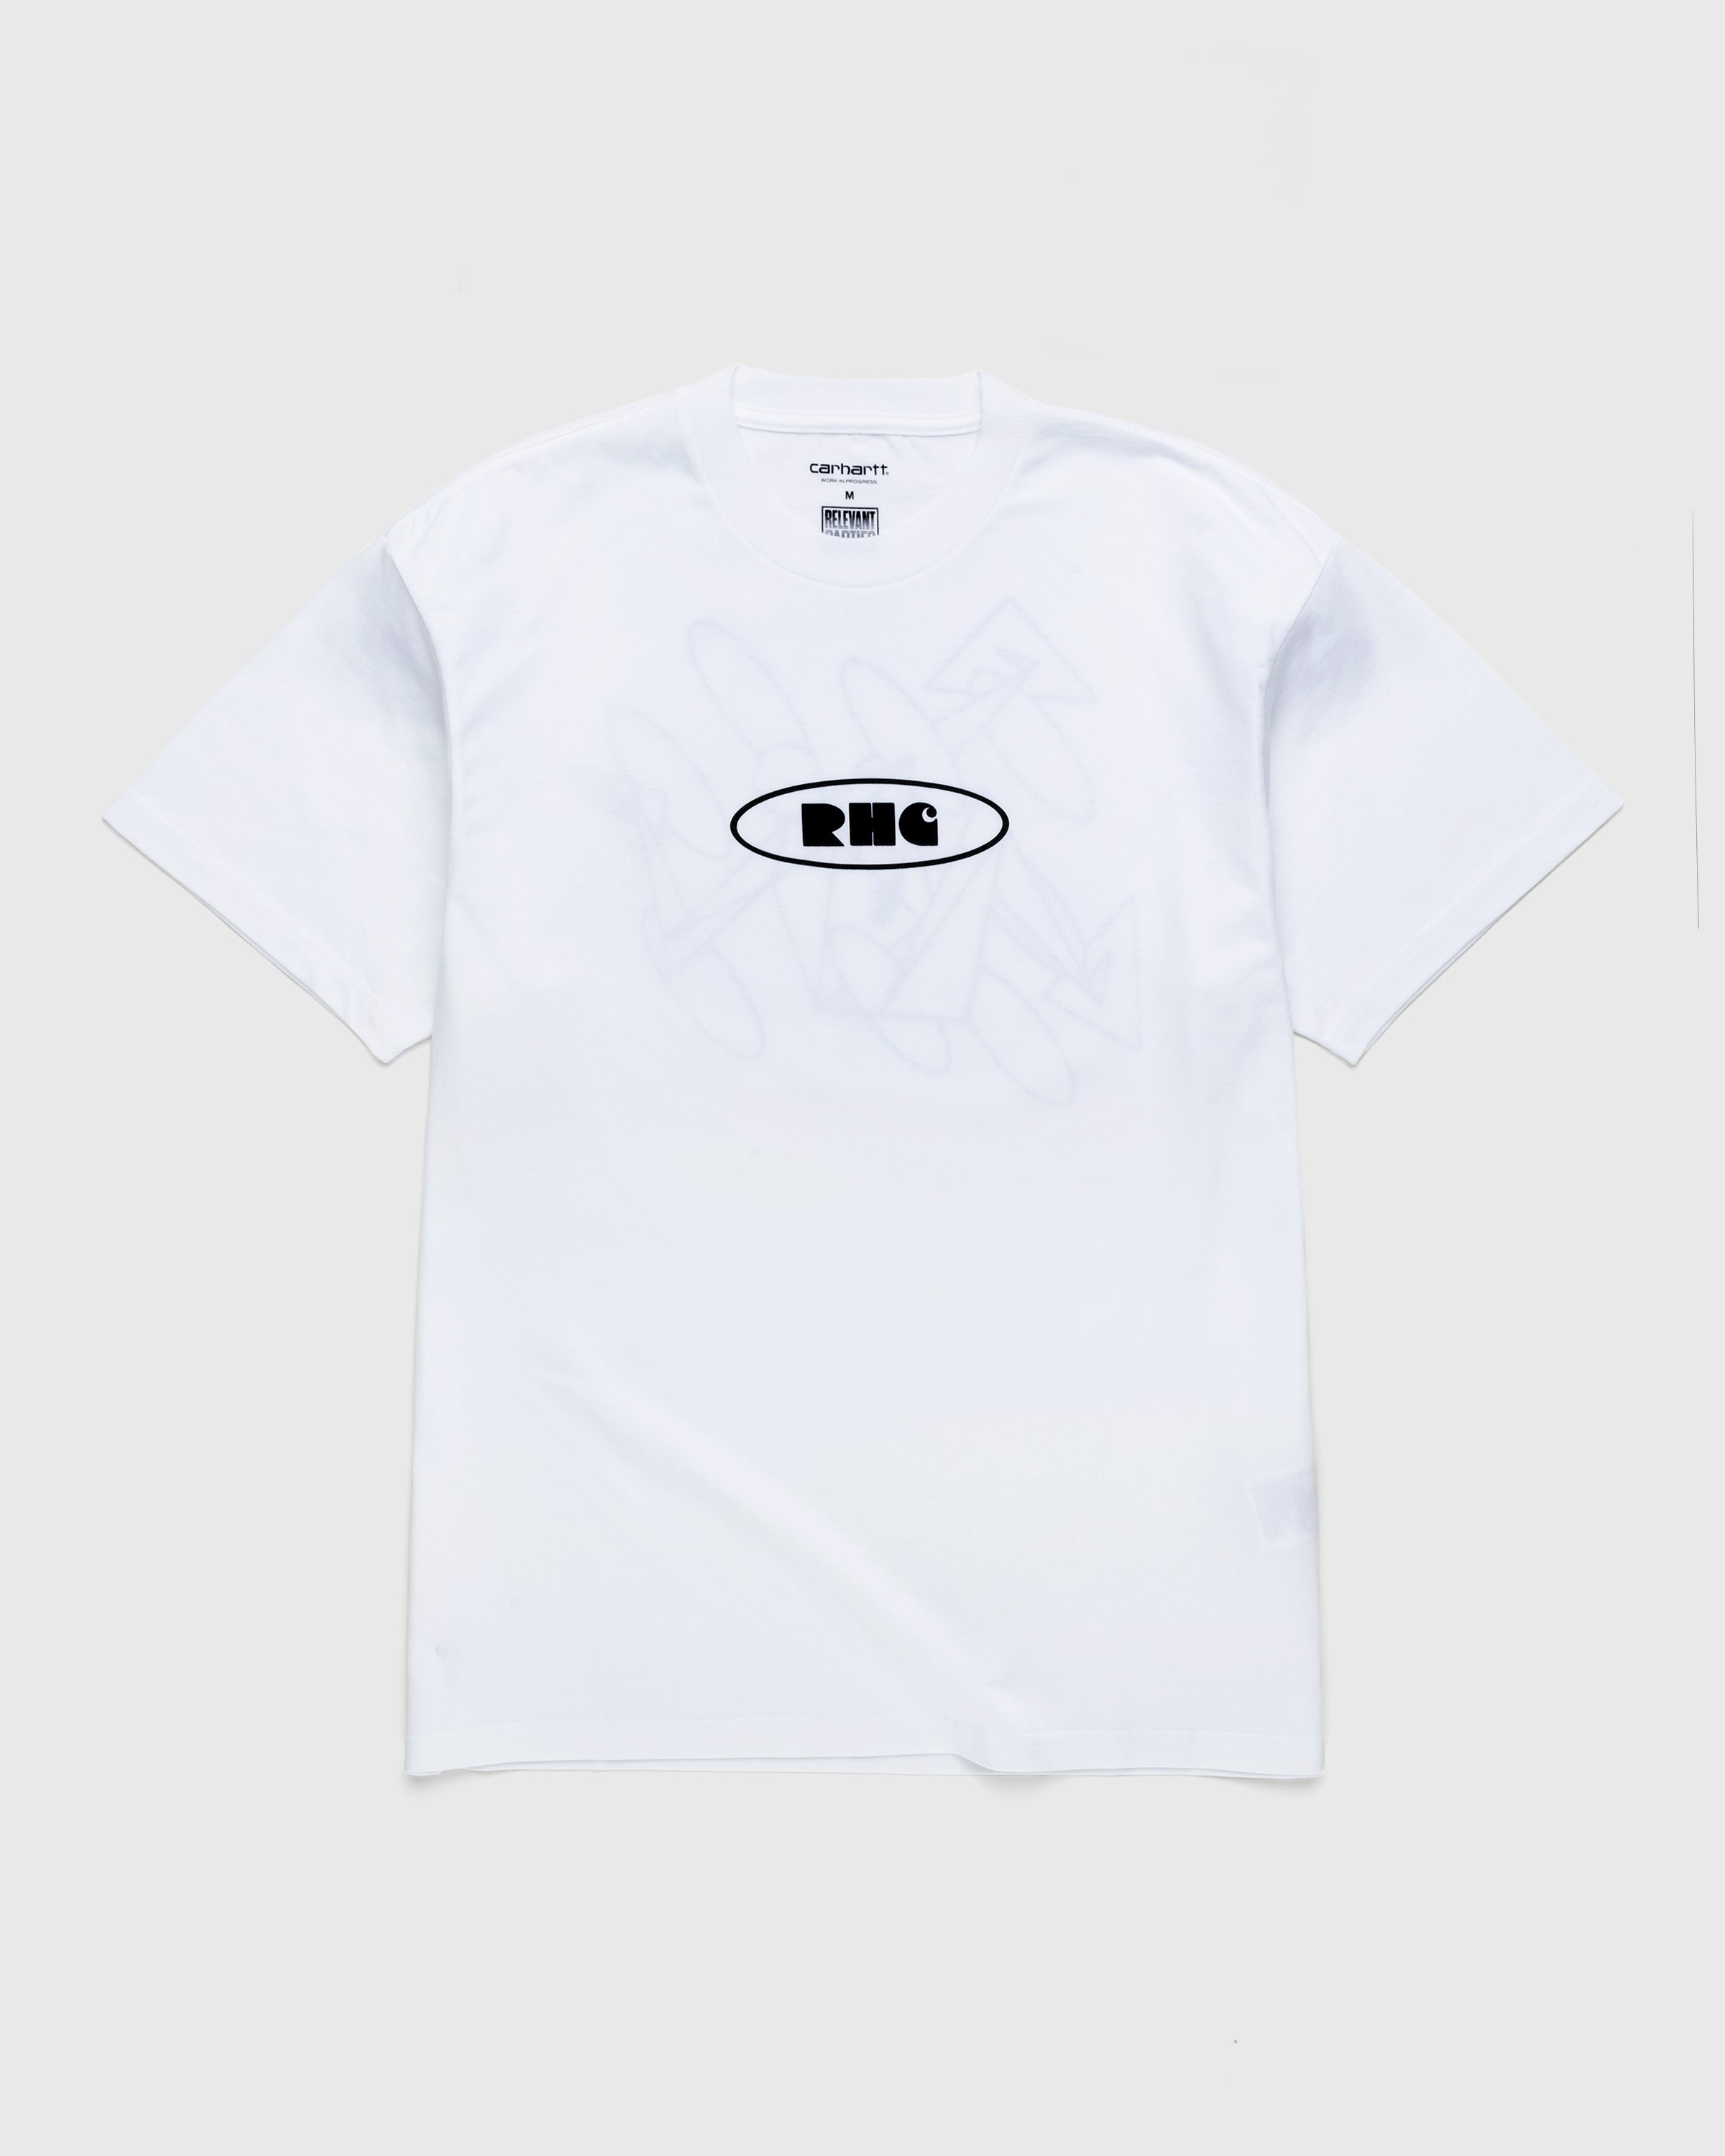 Carhartt WIP – Rush Hour T-Shirt White/Black - Tops - White - Image 1